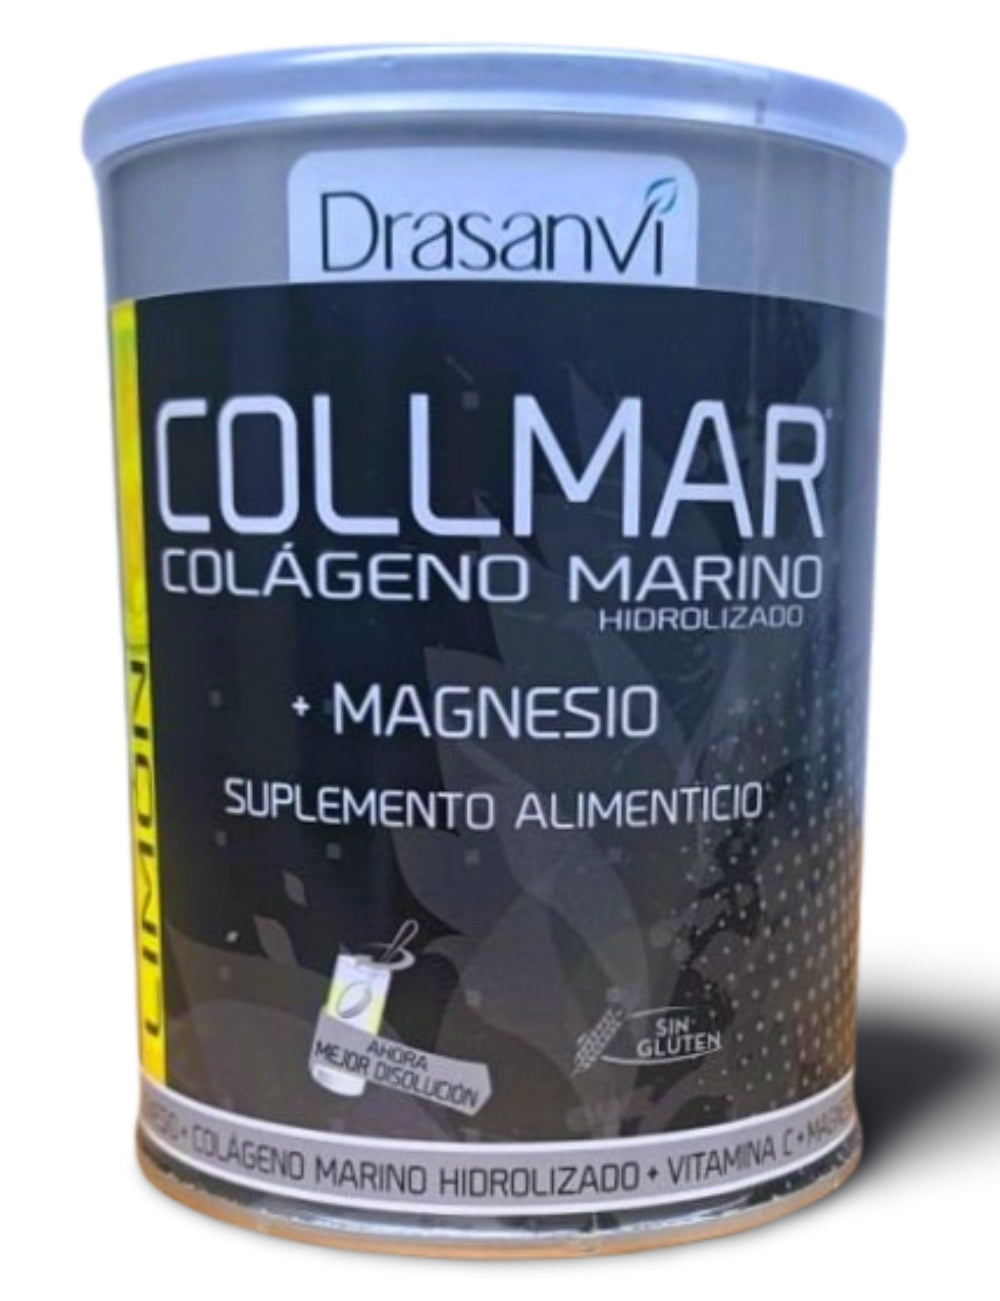 Collmar Colágeno Marino Hidrolizado Magnesio Limón, 300g  Drasanvi